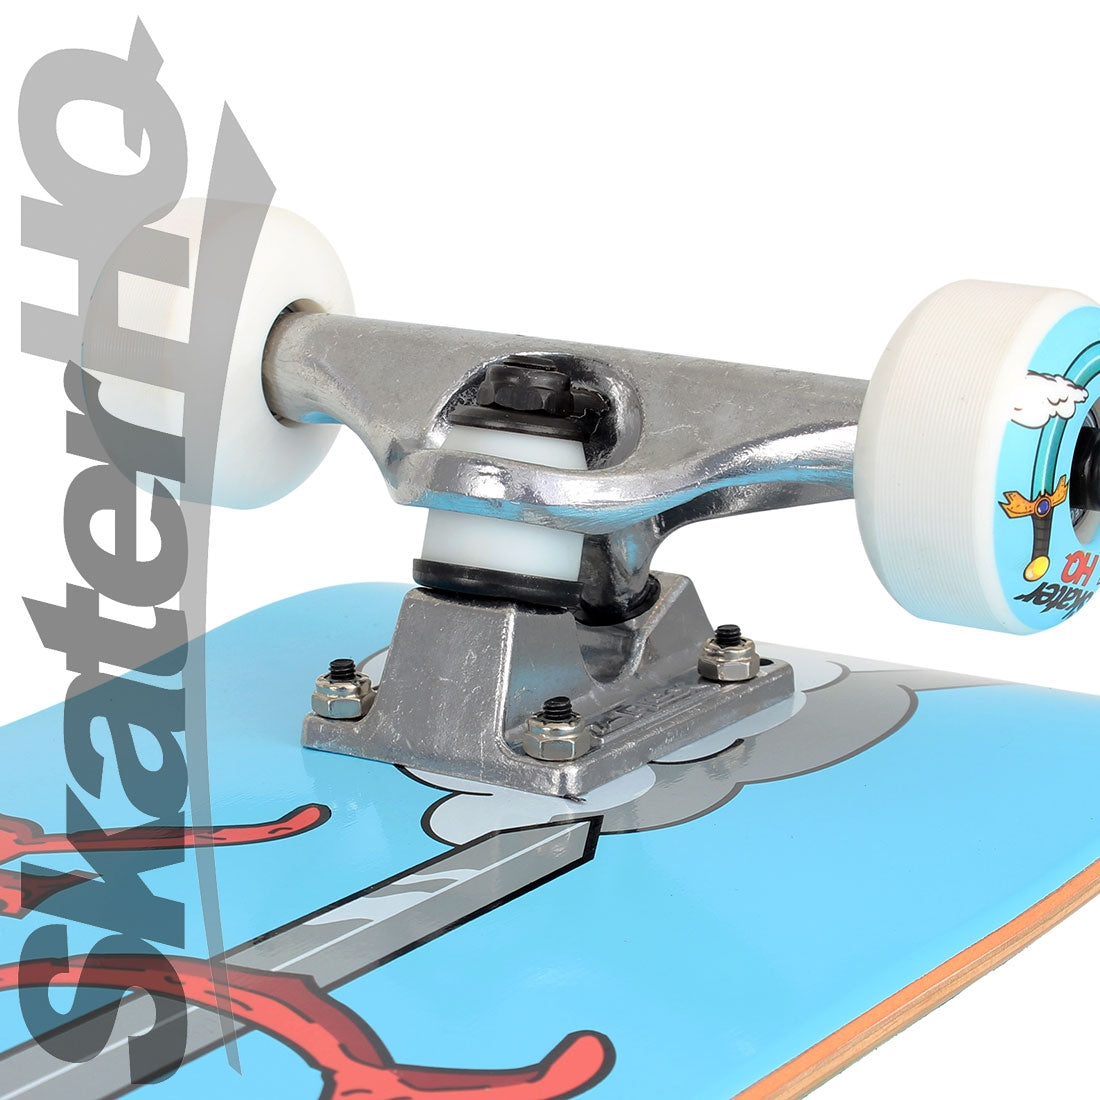 Skater HQ Shredding Time V2 7.9 S Complete Skateboard Completes Modern Street